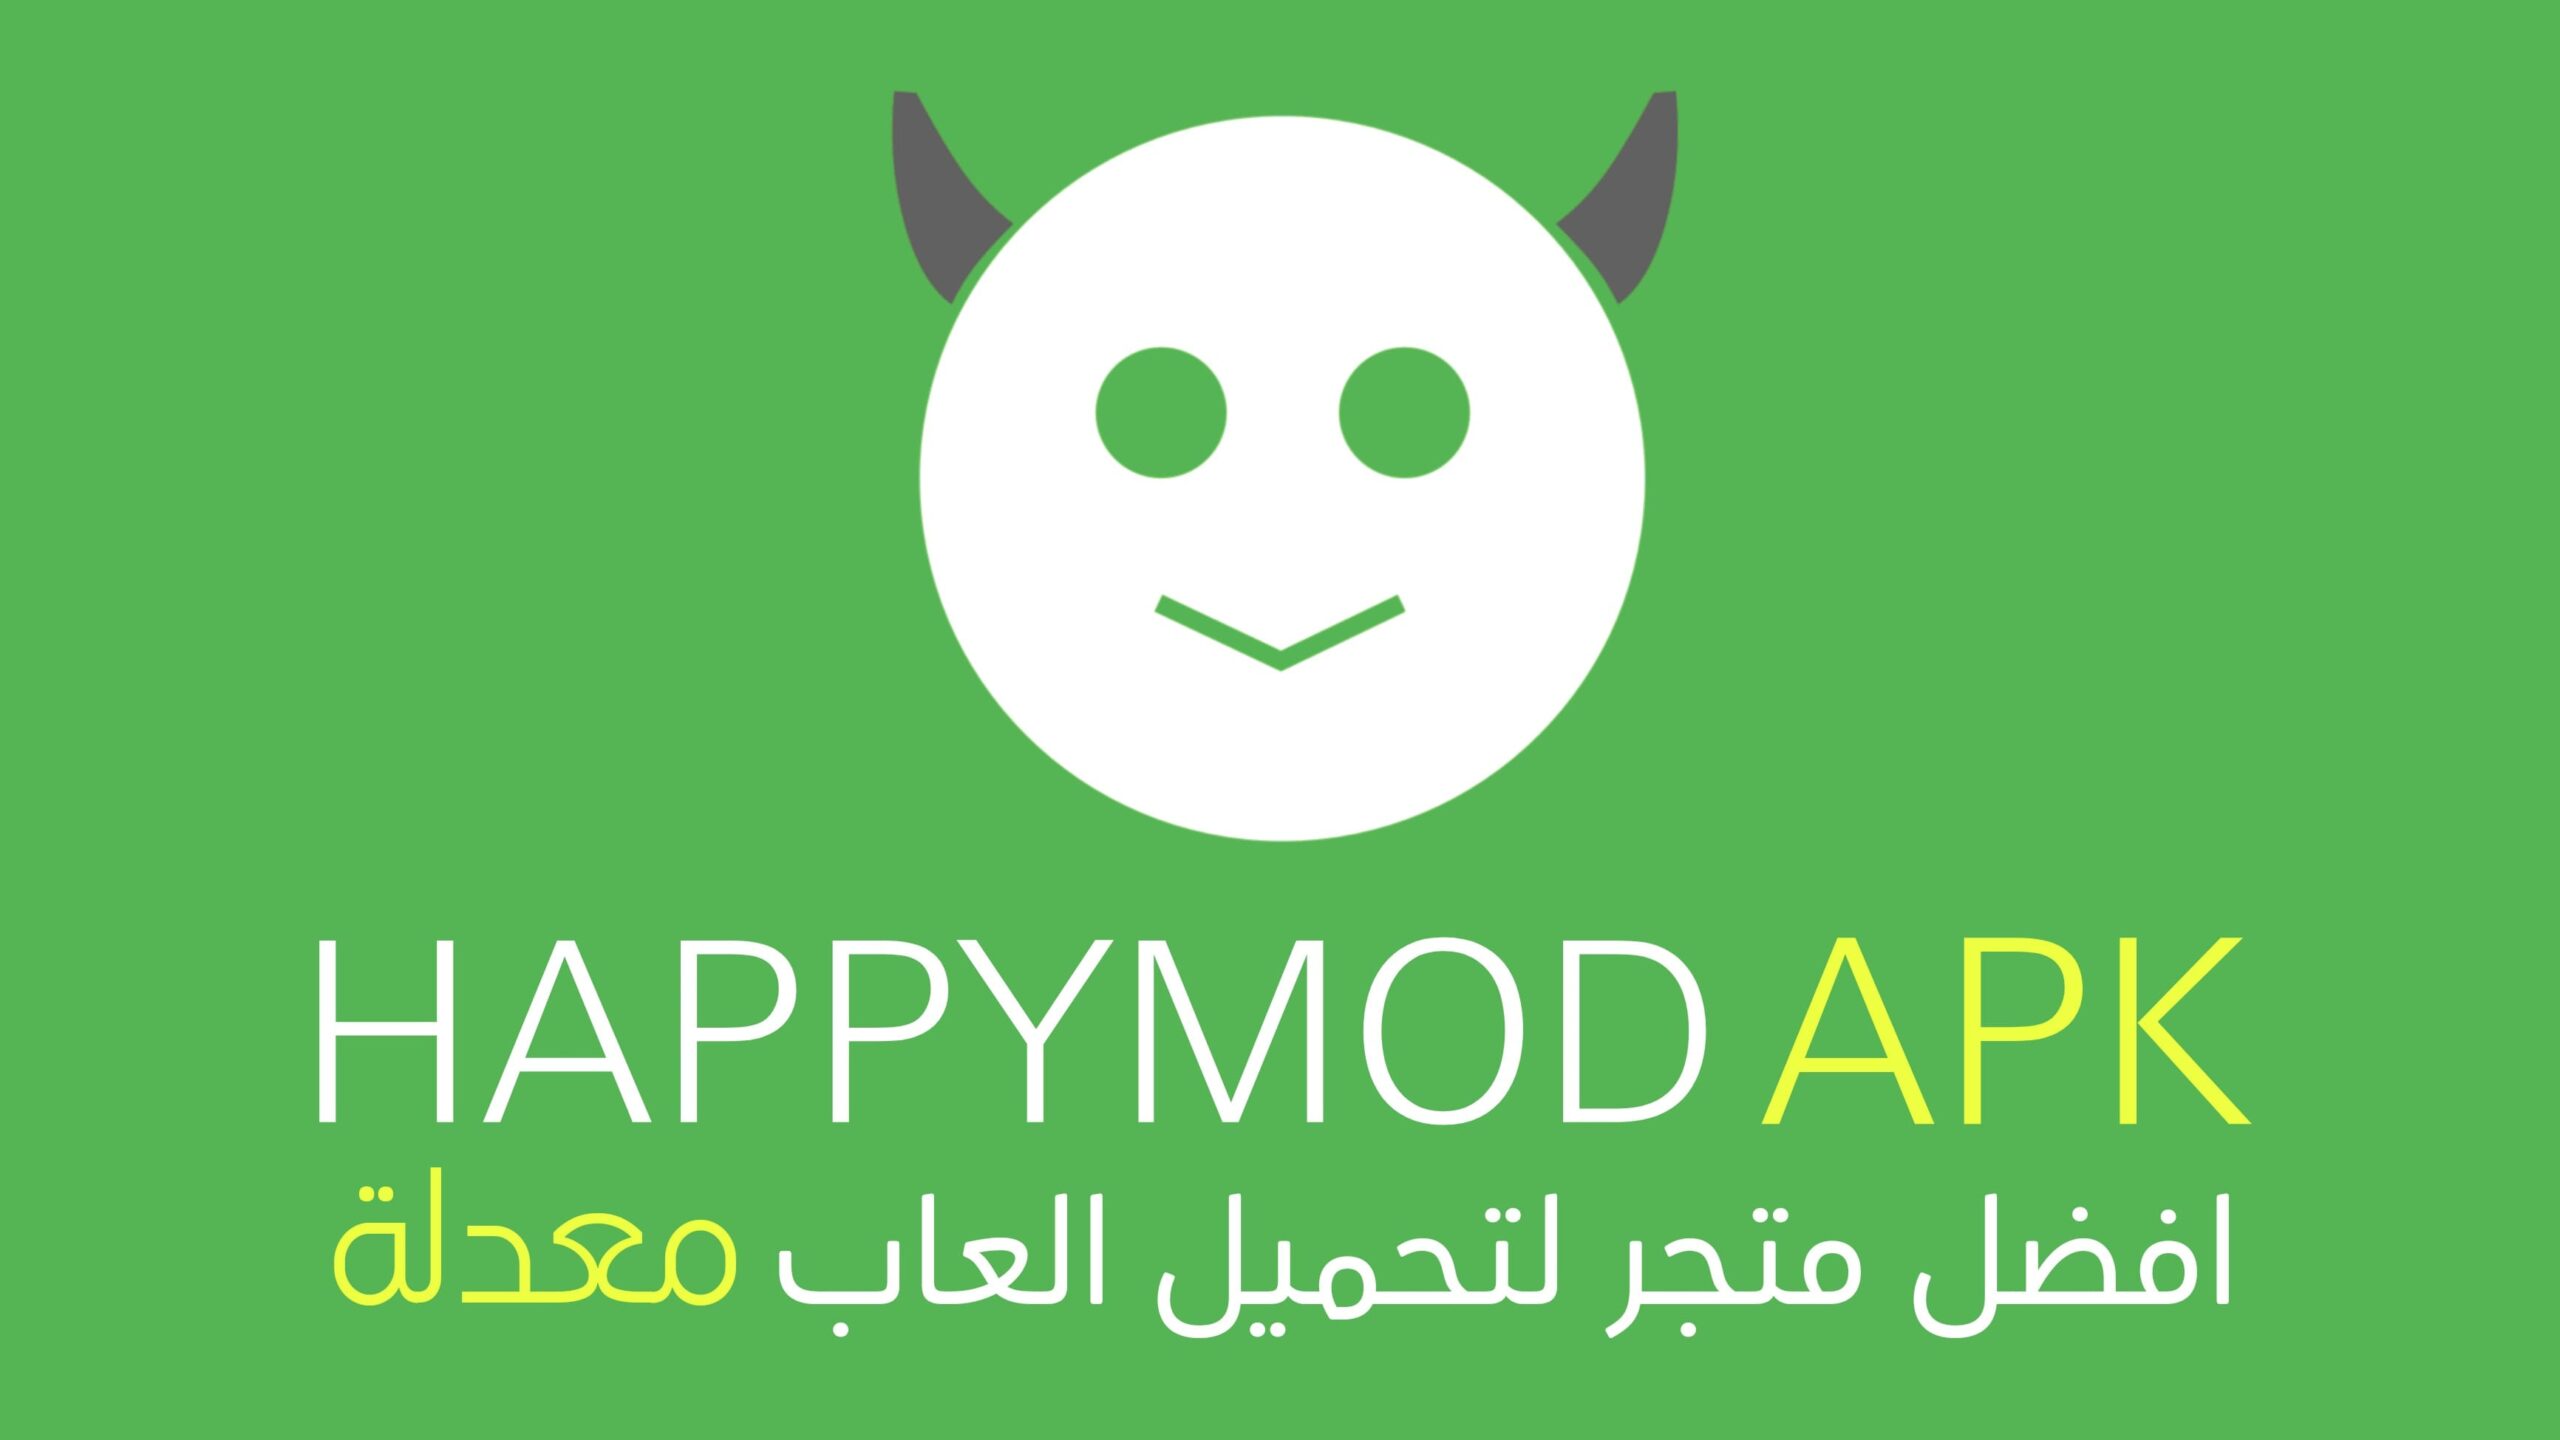 تحميل تطبيق هابي مود الأصلي HappyMod apk بسهولة وتنزيل الألعاب